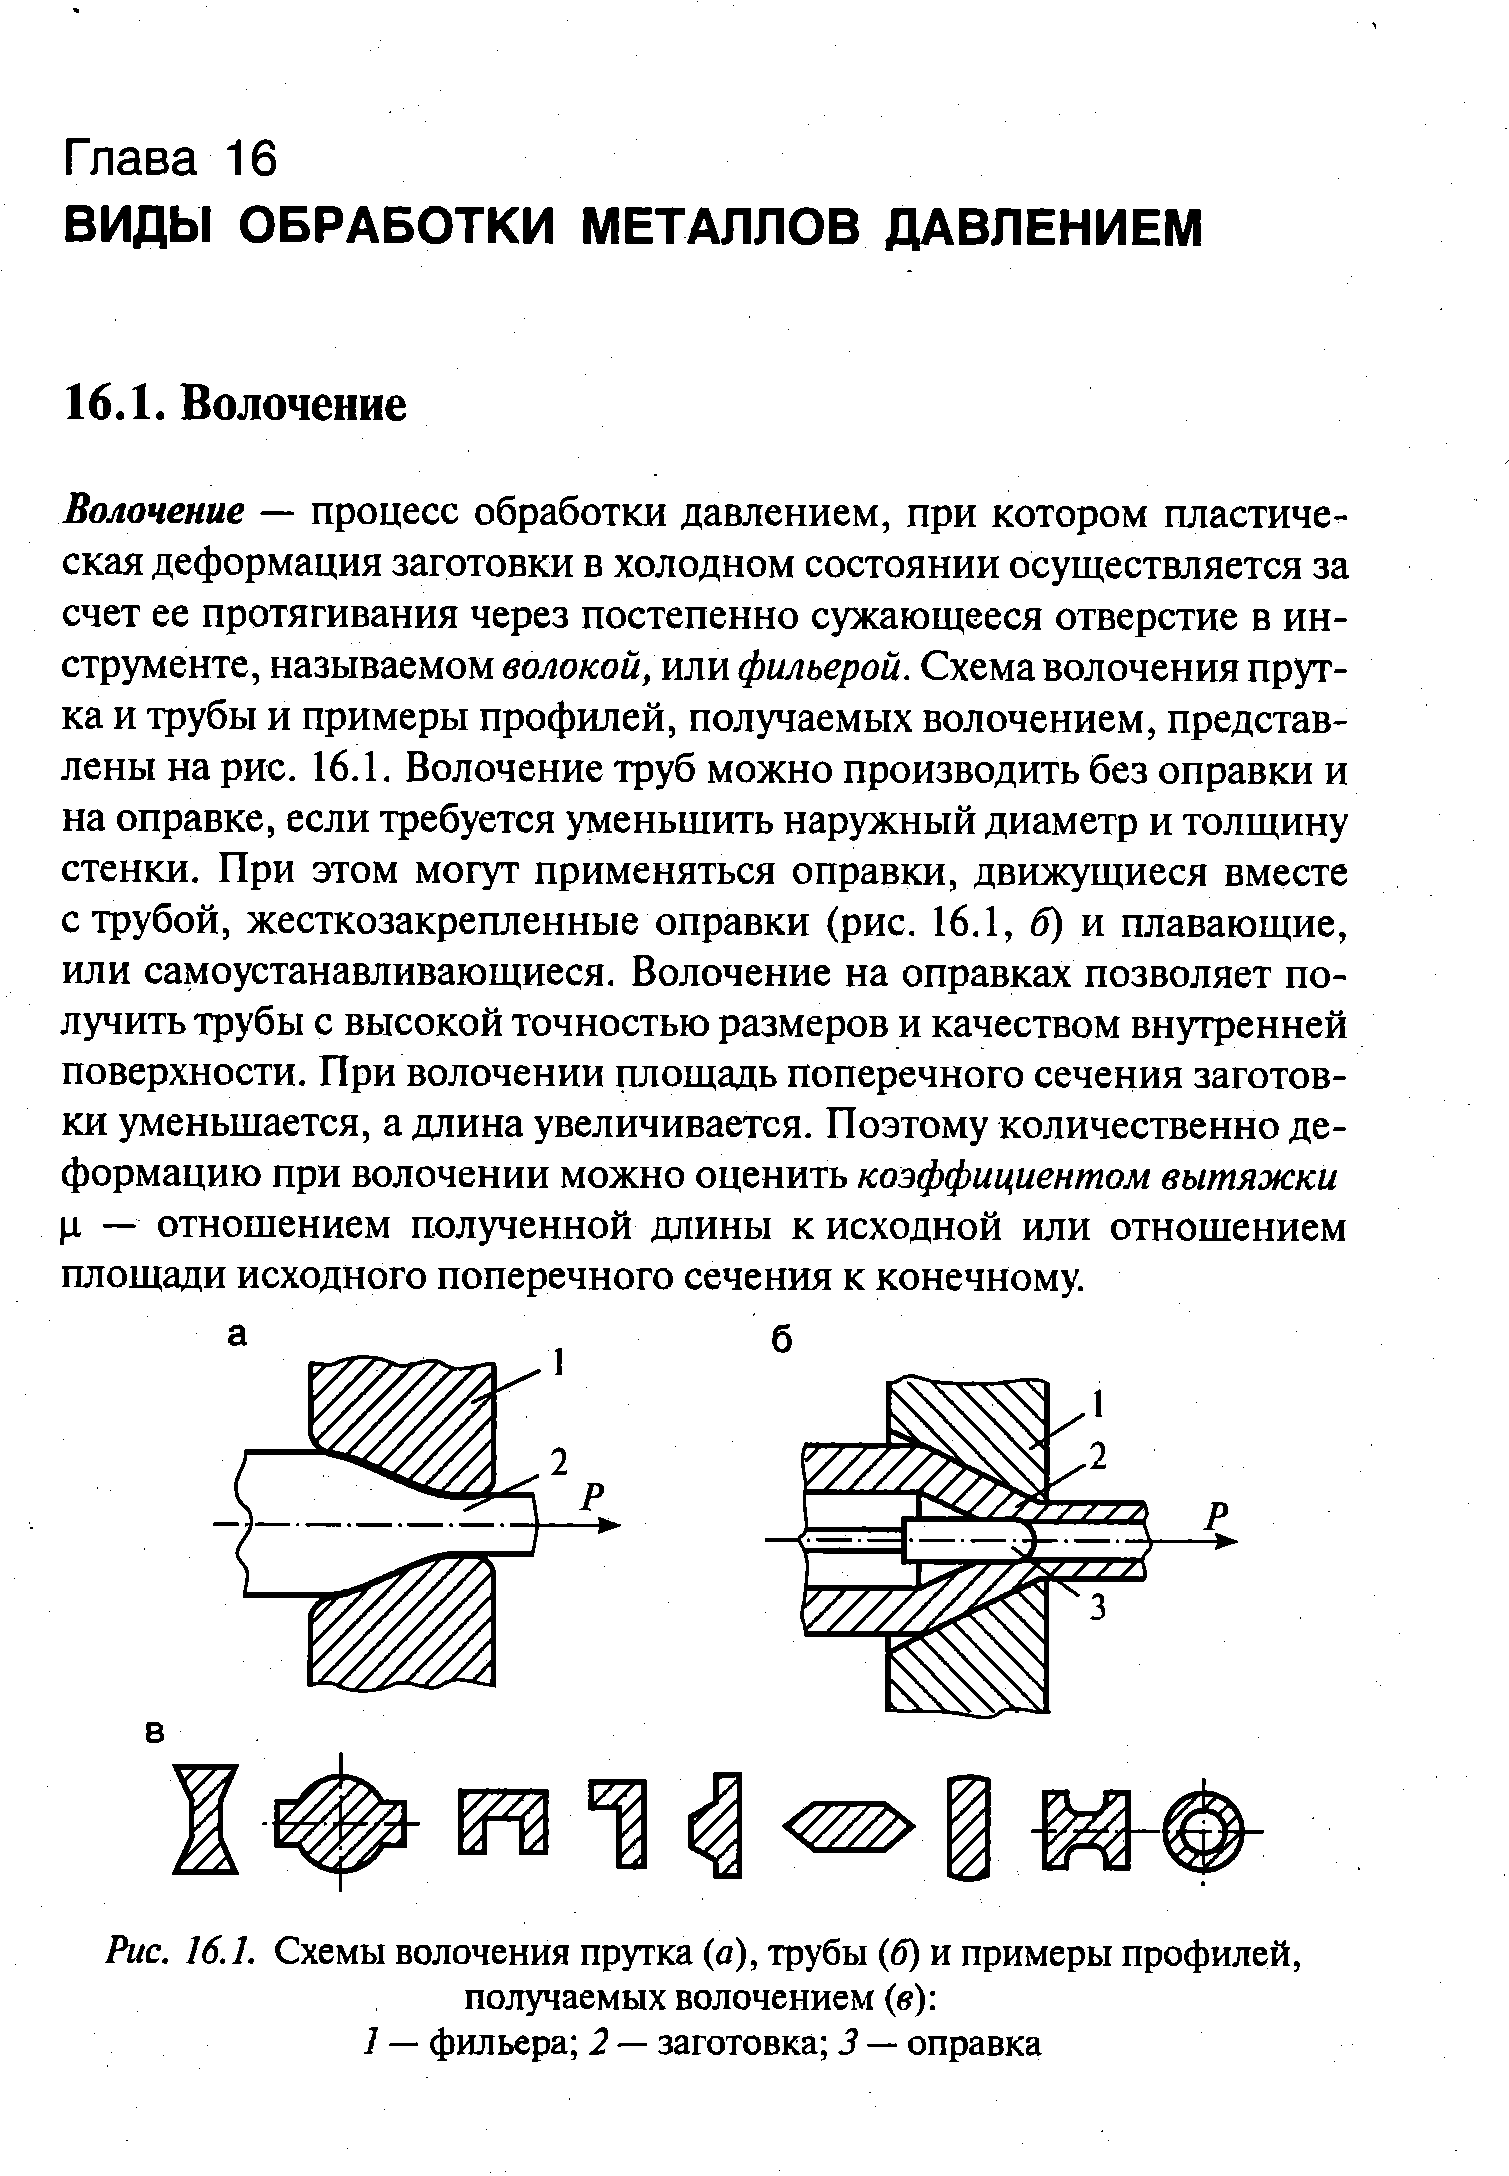 Рис. 16.1. Схемы волочения прутка (а), трубы (б) и примеры профилей, получаемых волочением (в) 
